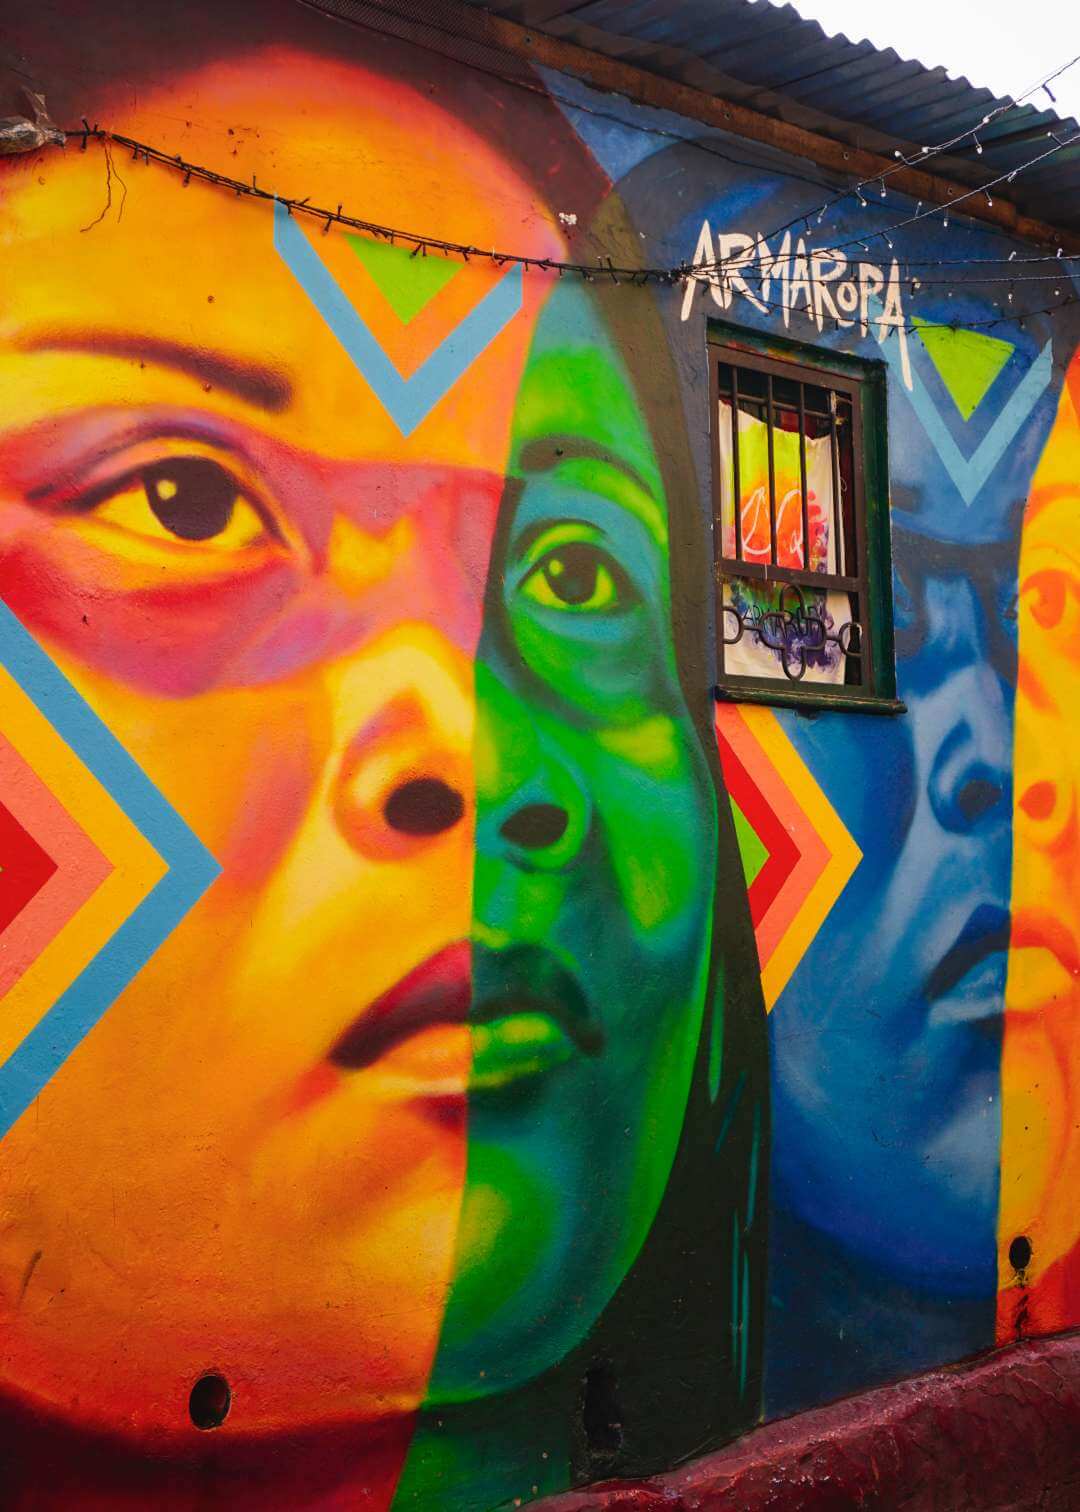 Arte callejero de Bogotá